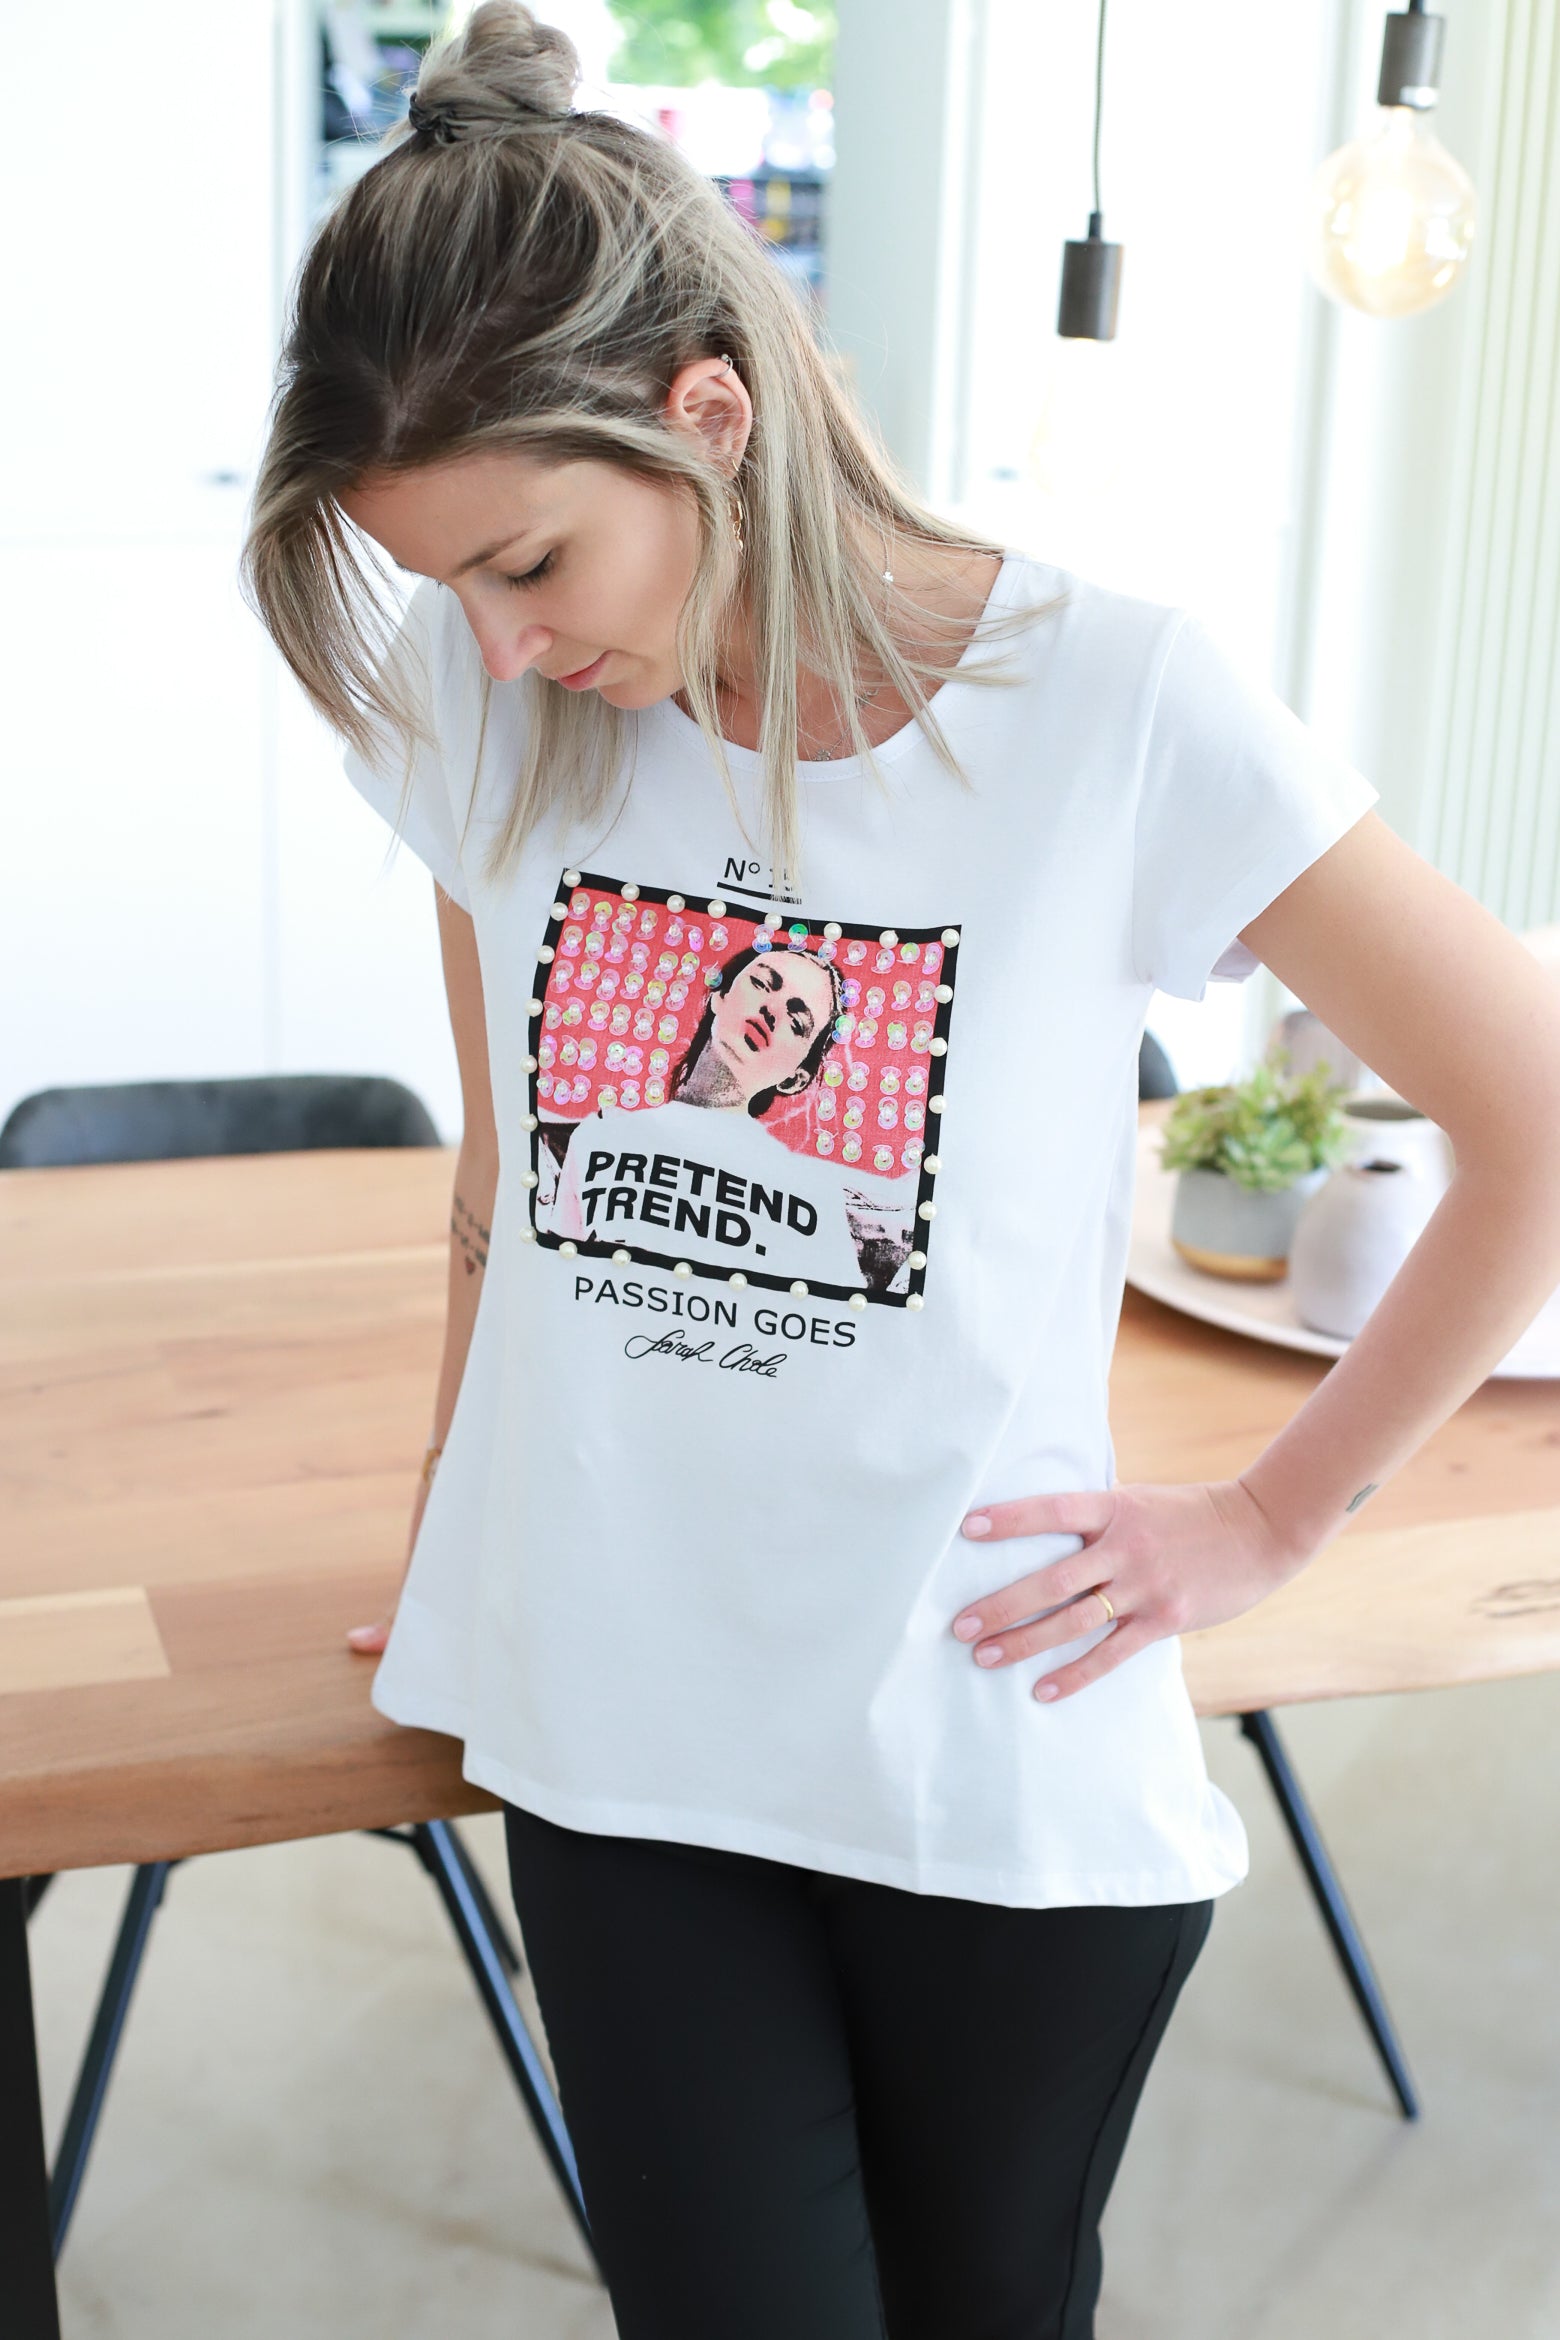 Onhandig Opsplitsen Haringen SARAH COLE T-shirt met parels en pailletjes – Ananoë